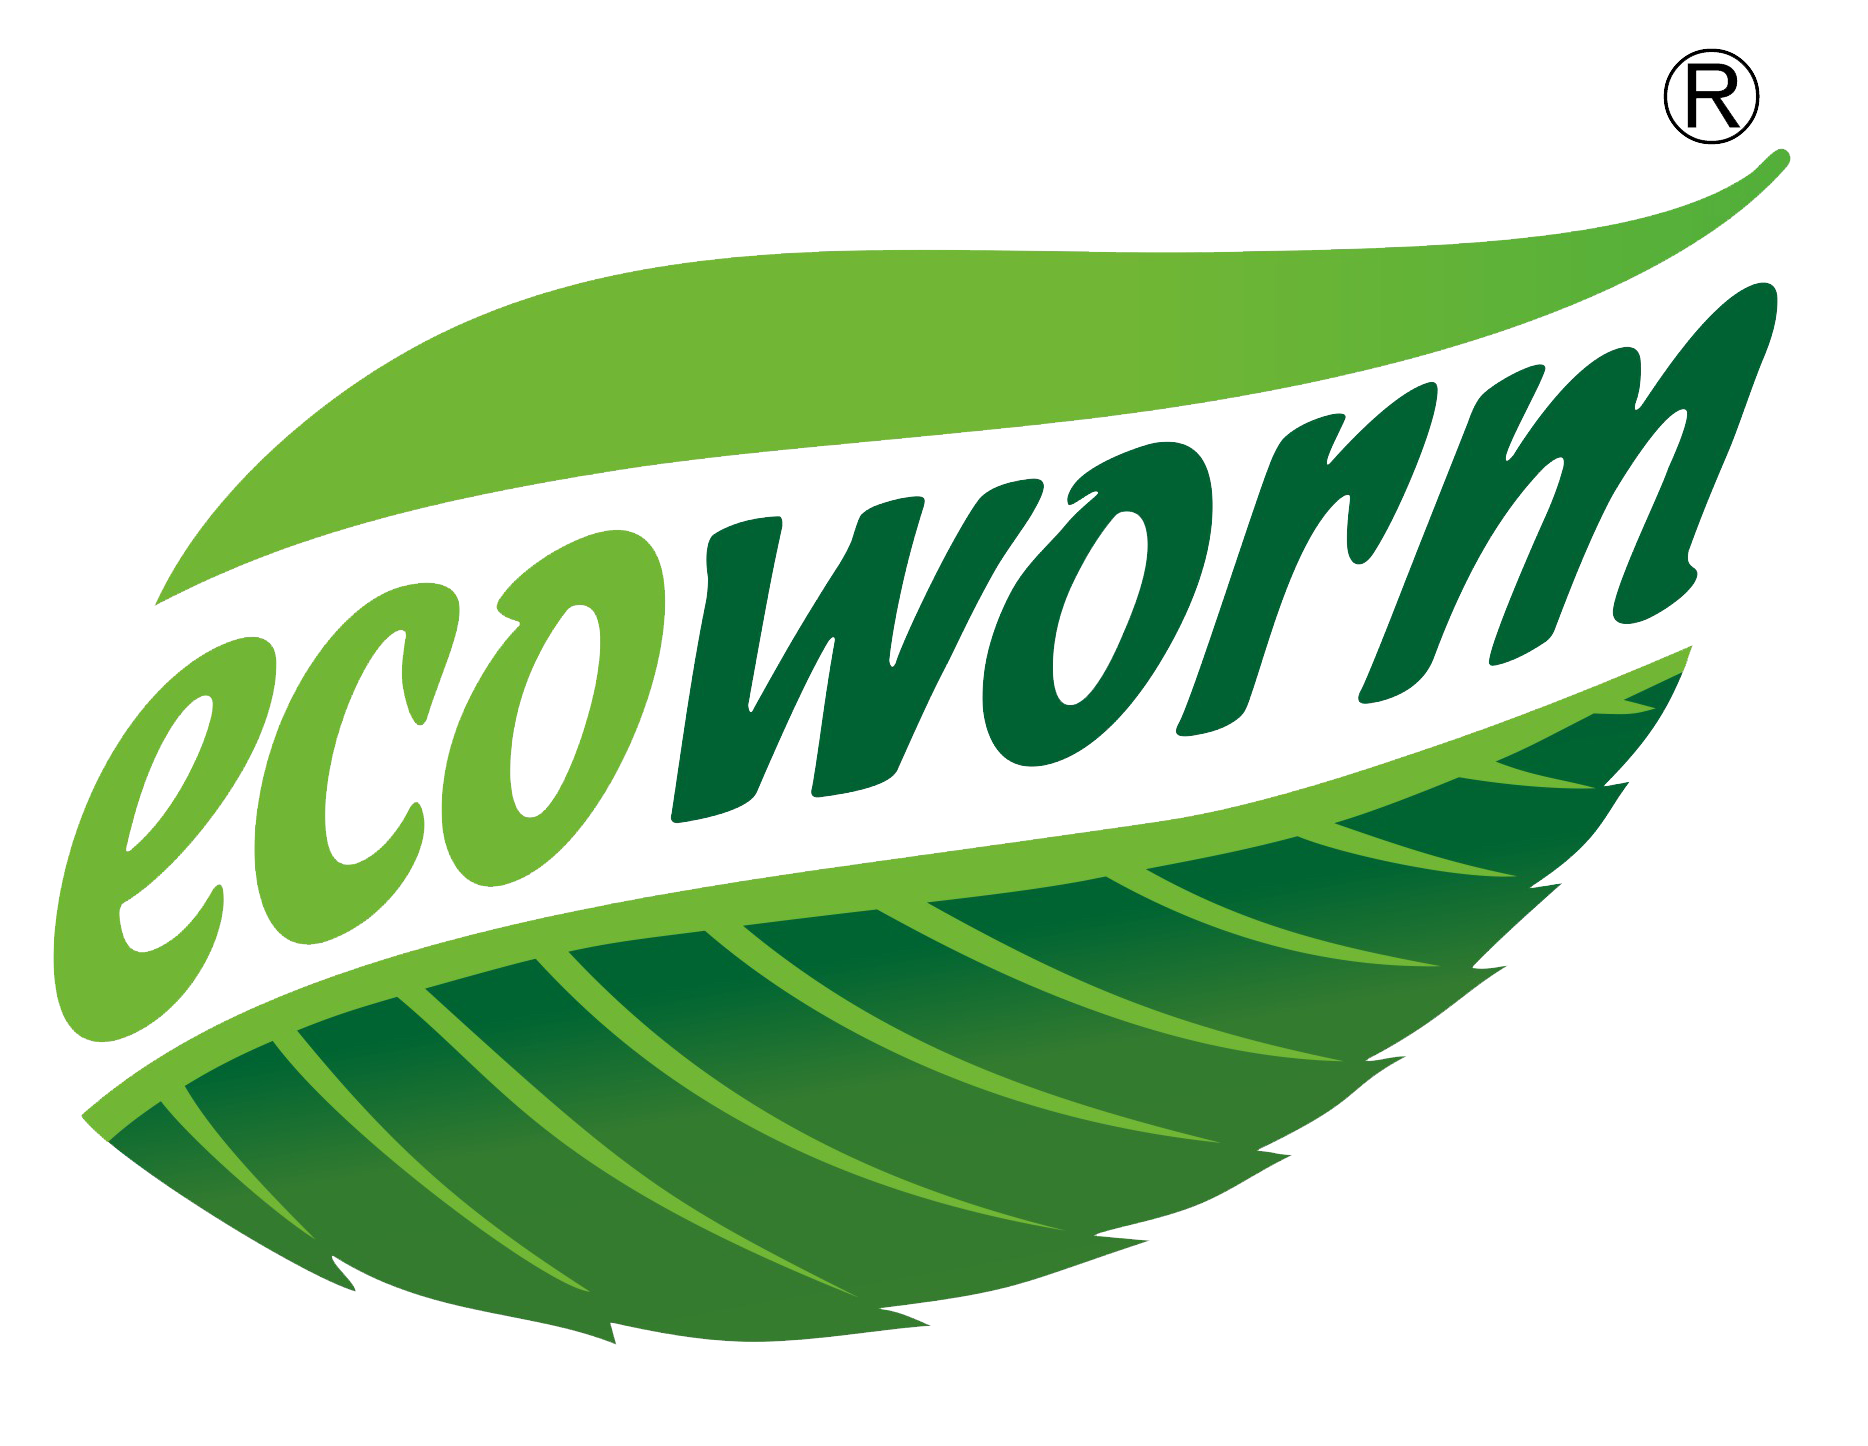 Ecoworm